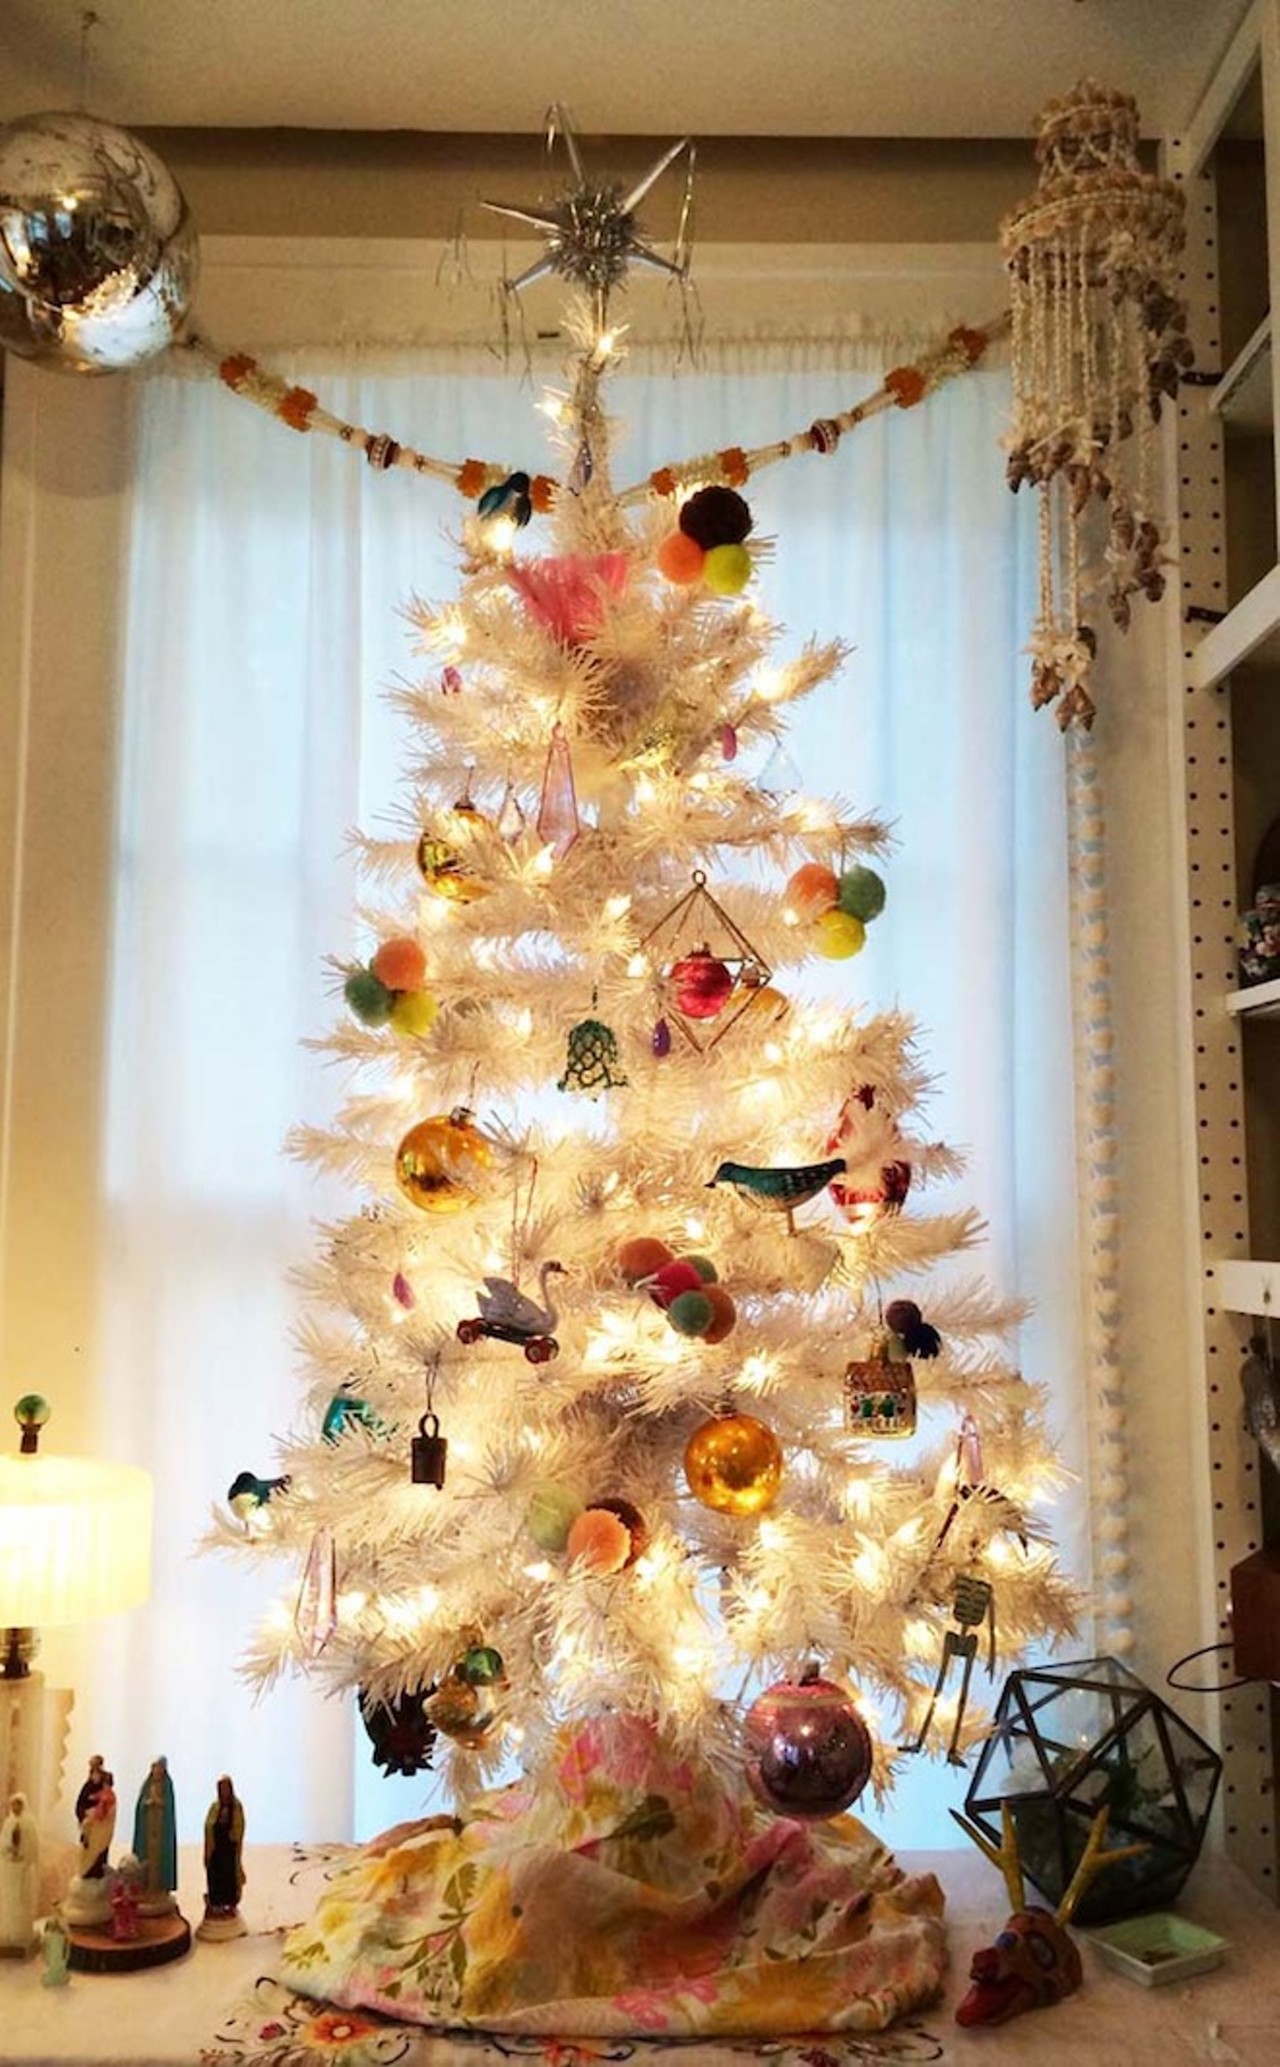 Adorable Christmas tree